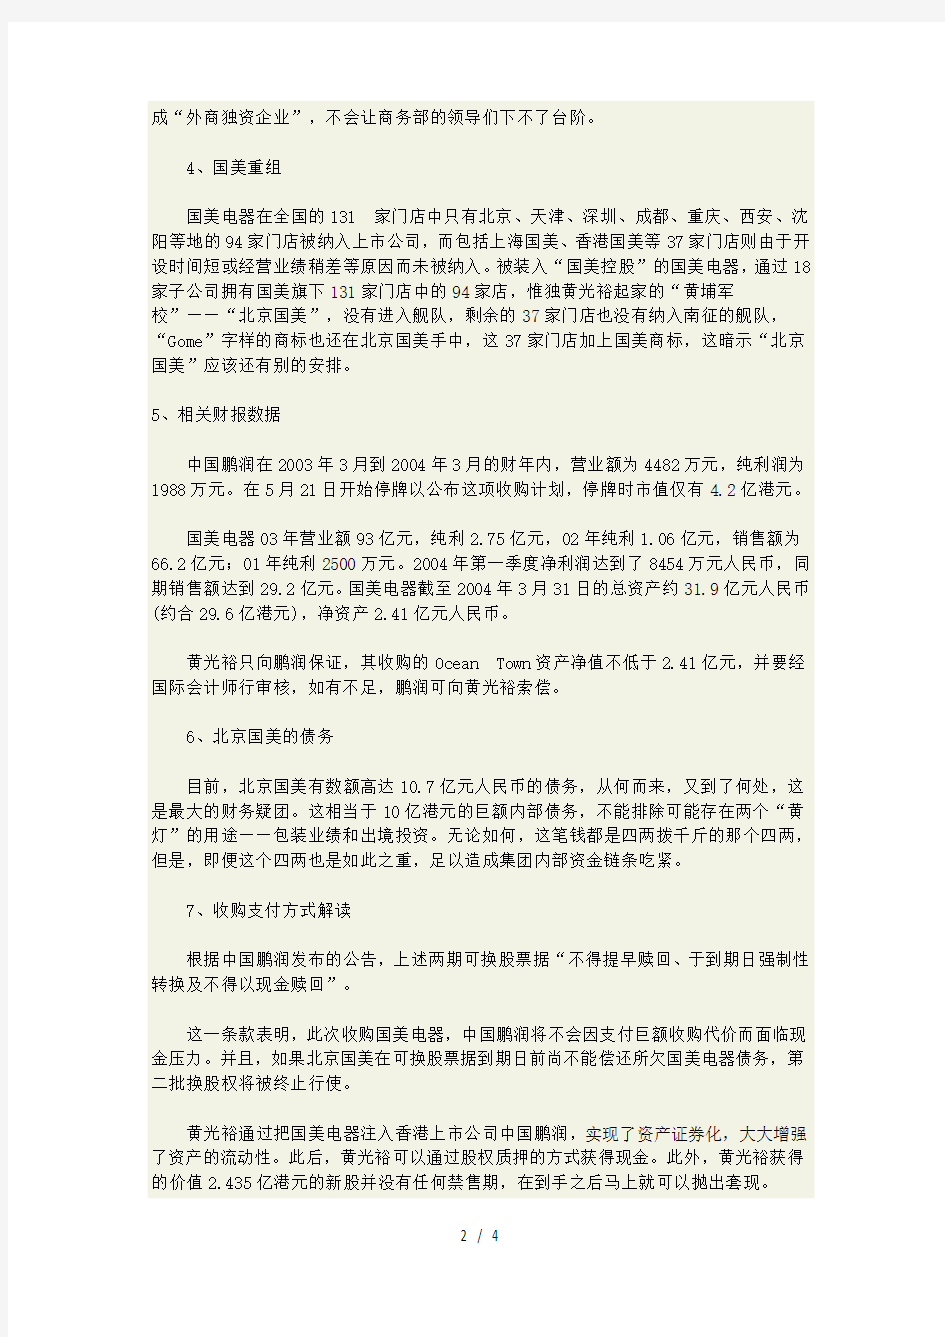 国美电器香港借壳上市的案例分析